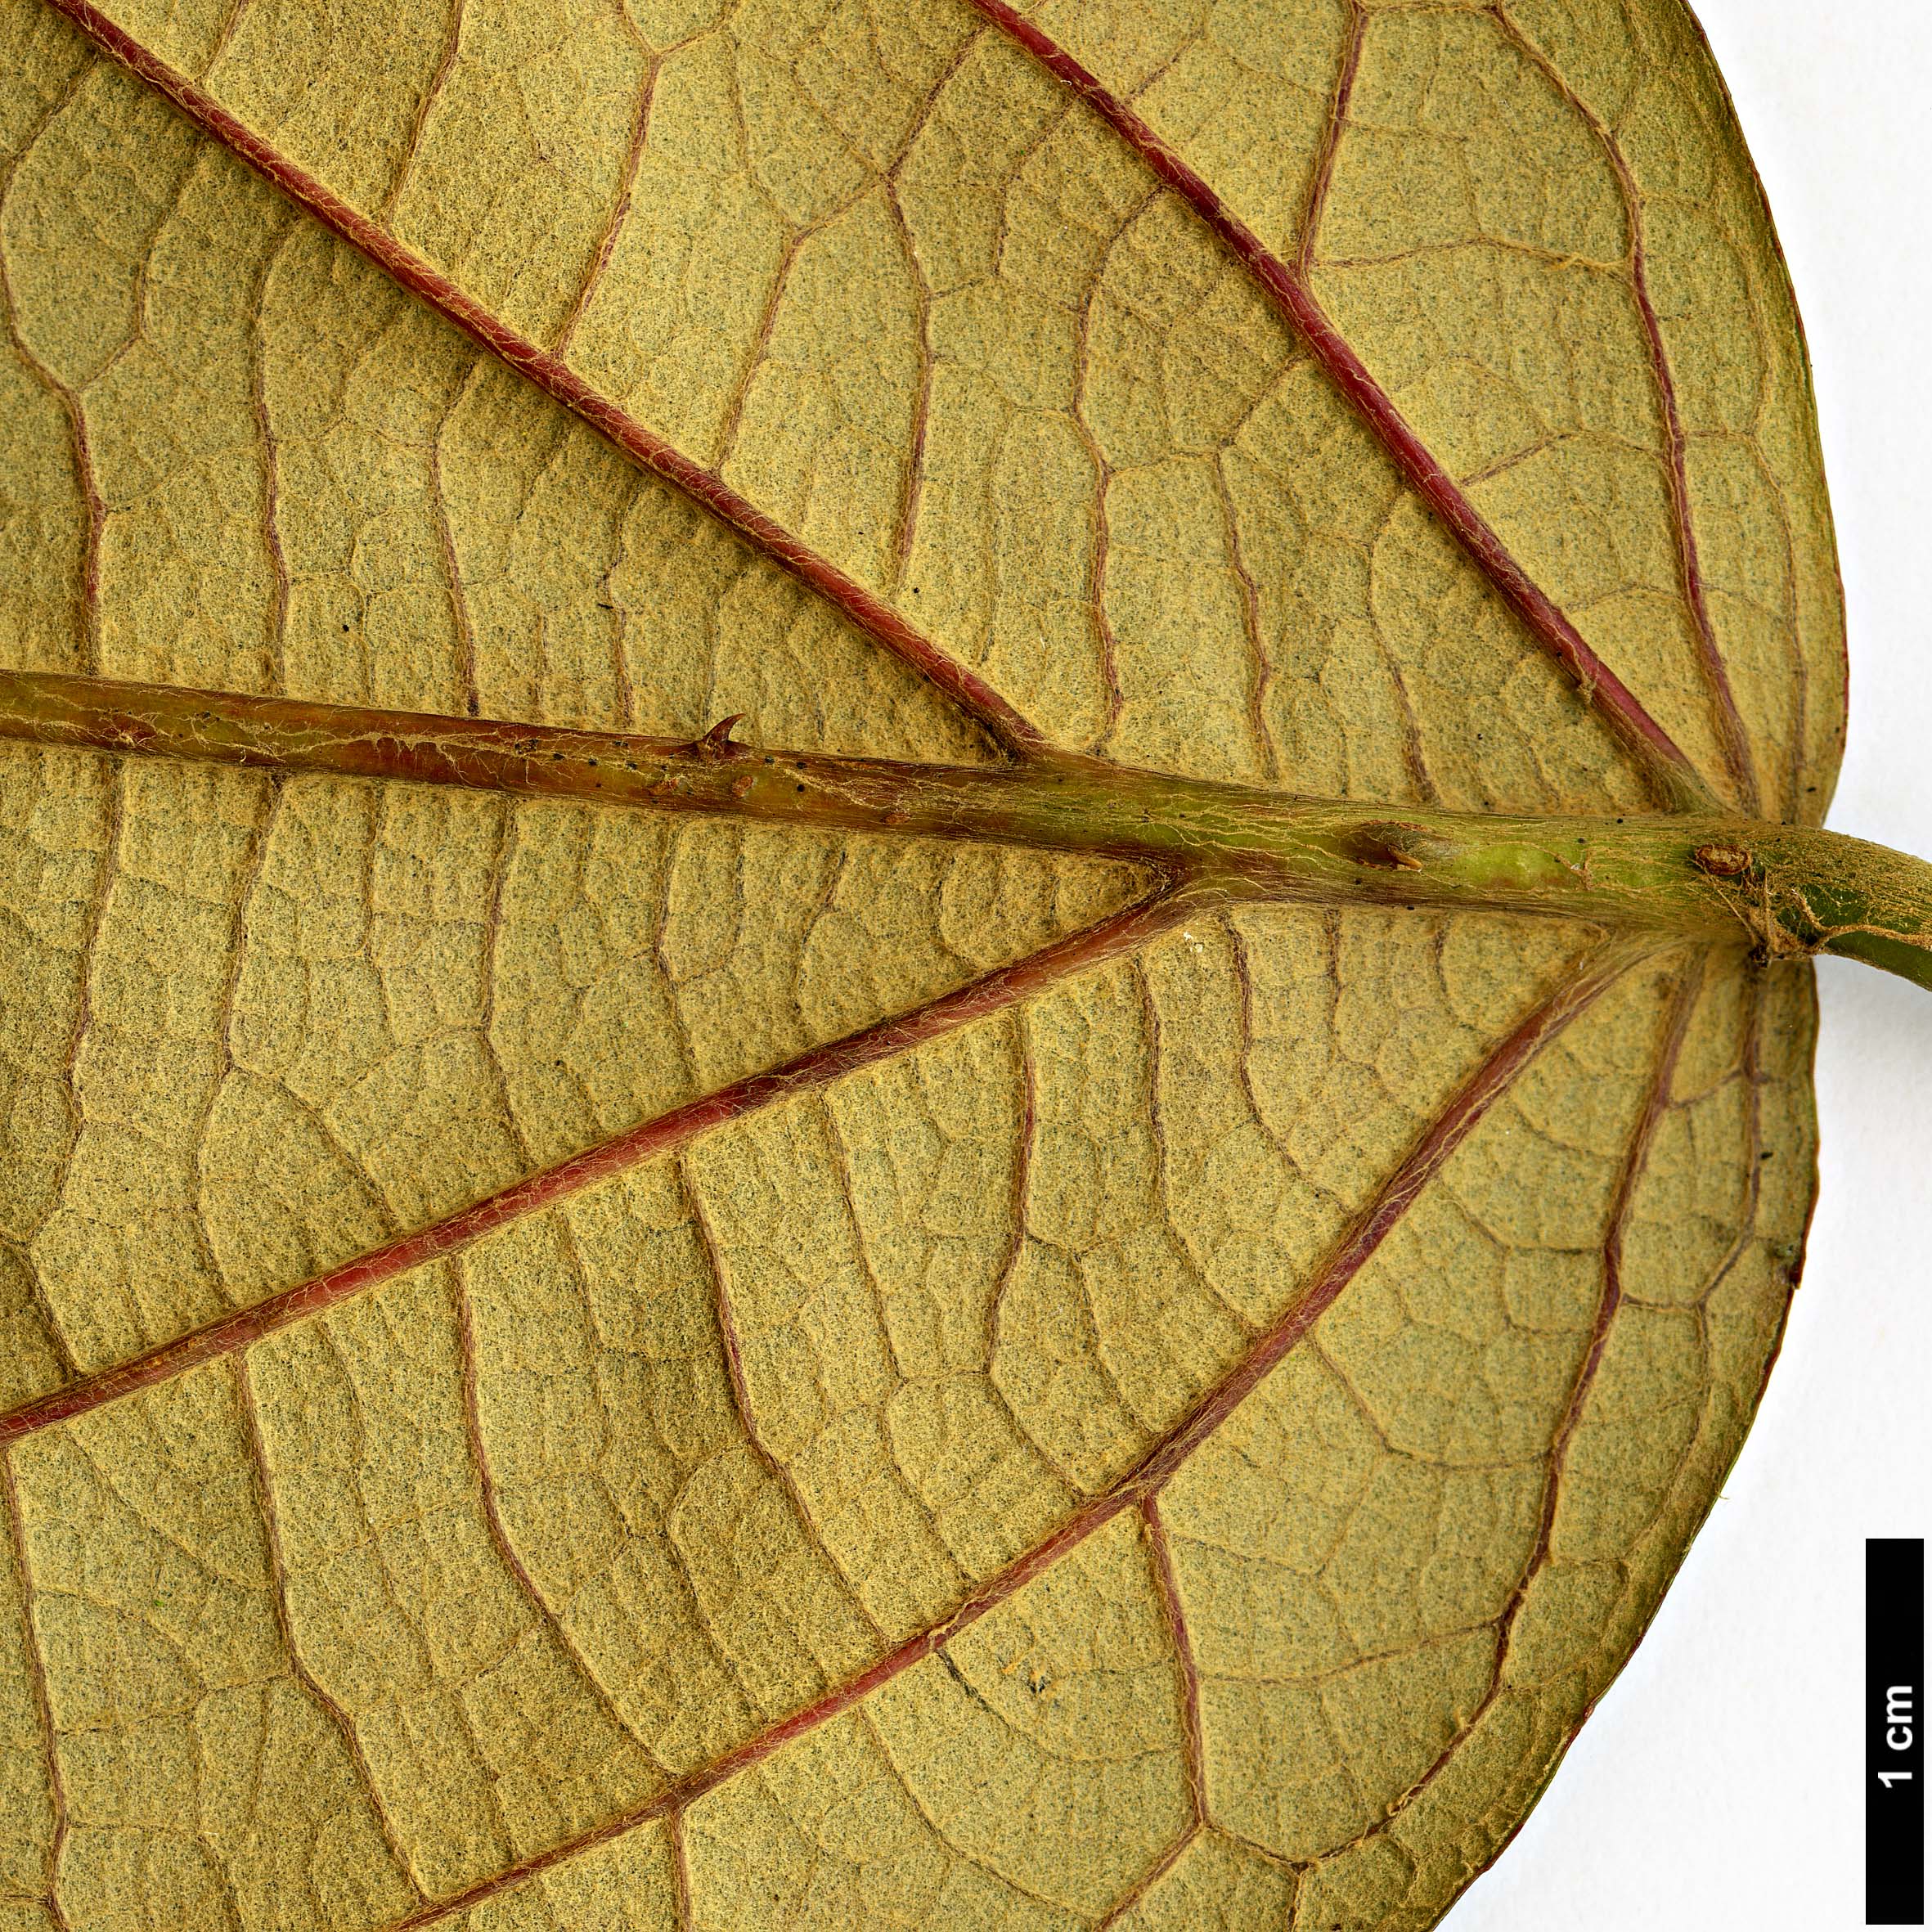 High resolution image: Family: Rosaceae - Genus: Rubus - Taxon: caudifolius